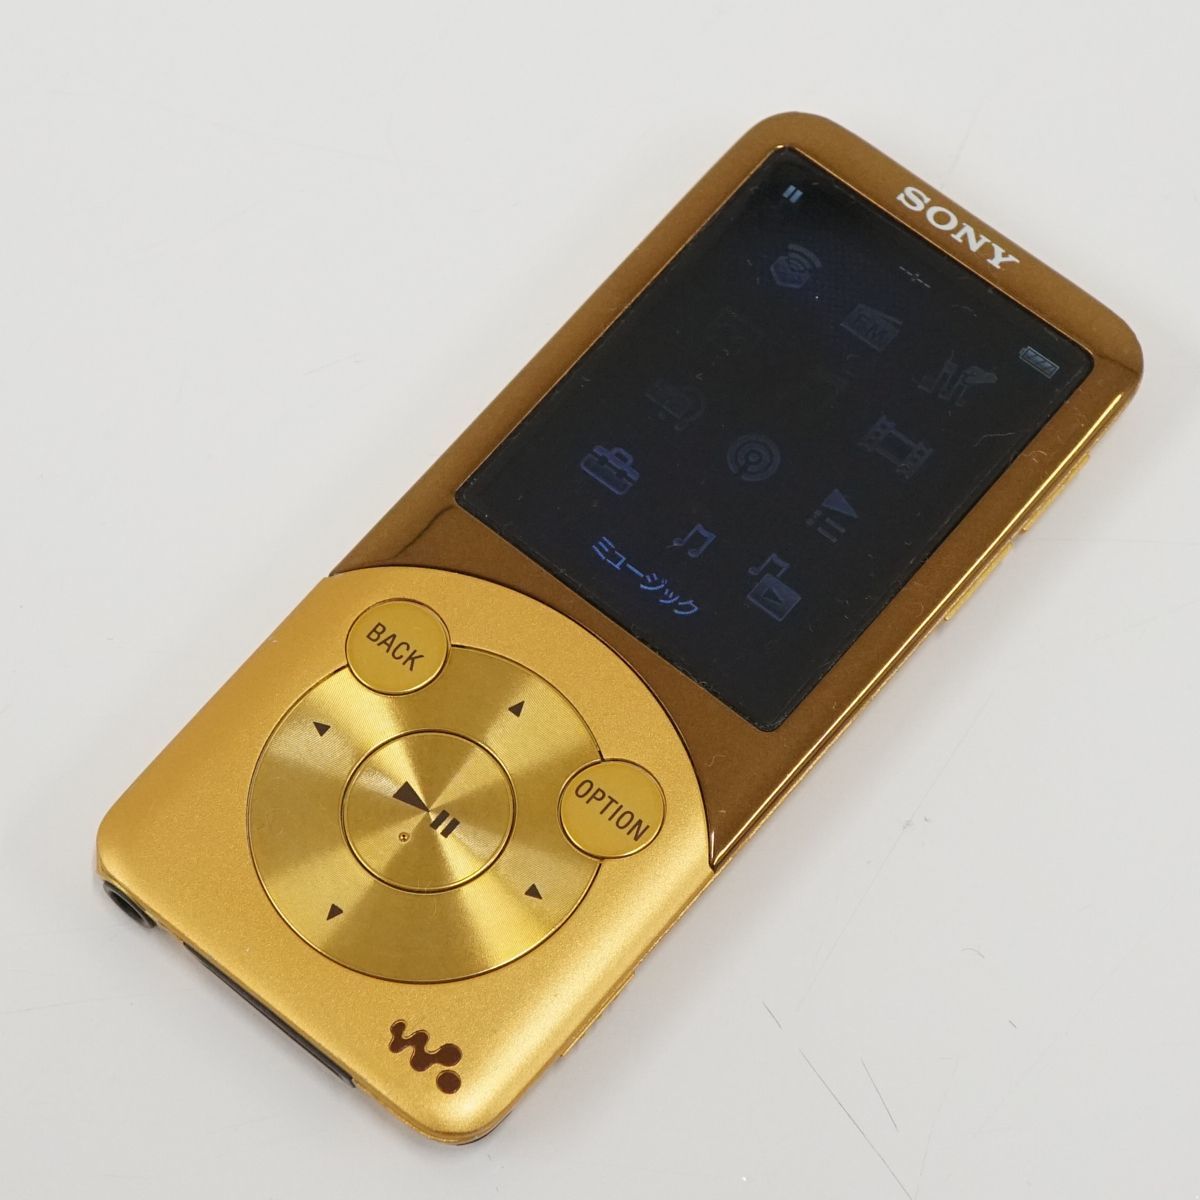 SONY ソニー WLKAMAN ウォークマン NW-S755 16GB USED品 ゴールド ポータブルオーディオプレーヤー 【難有】 T V9117_画像1